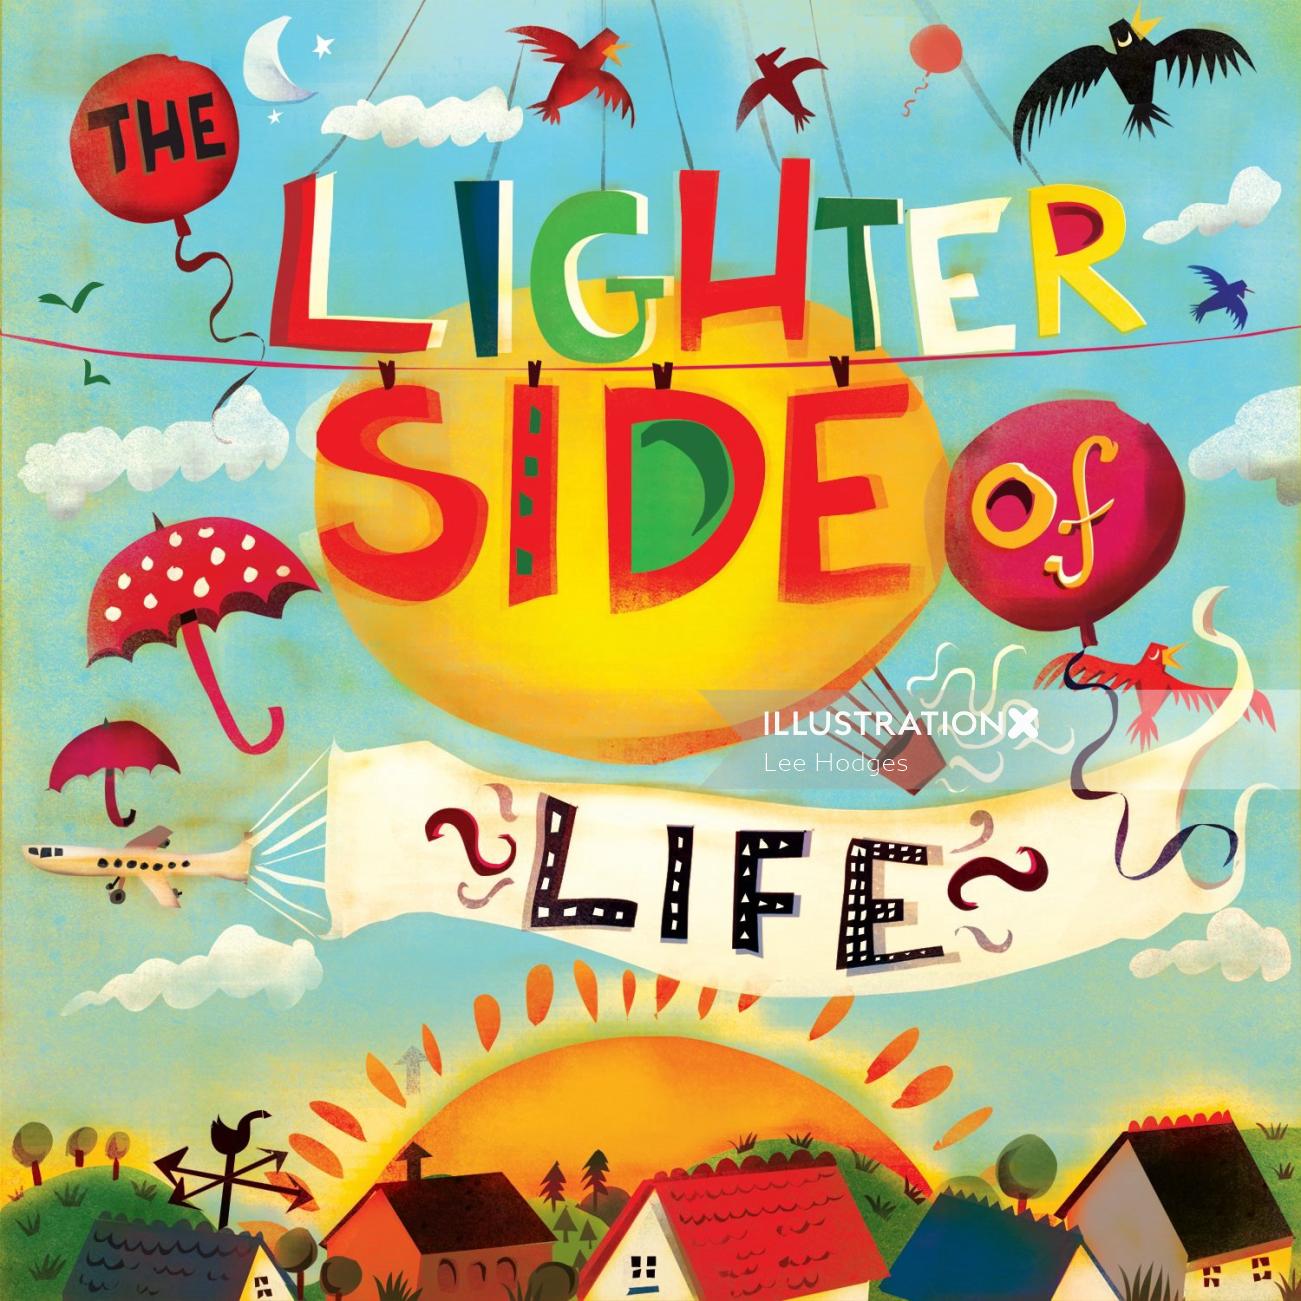 The Lighter Side of Life arte da capa do álbum